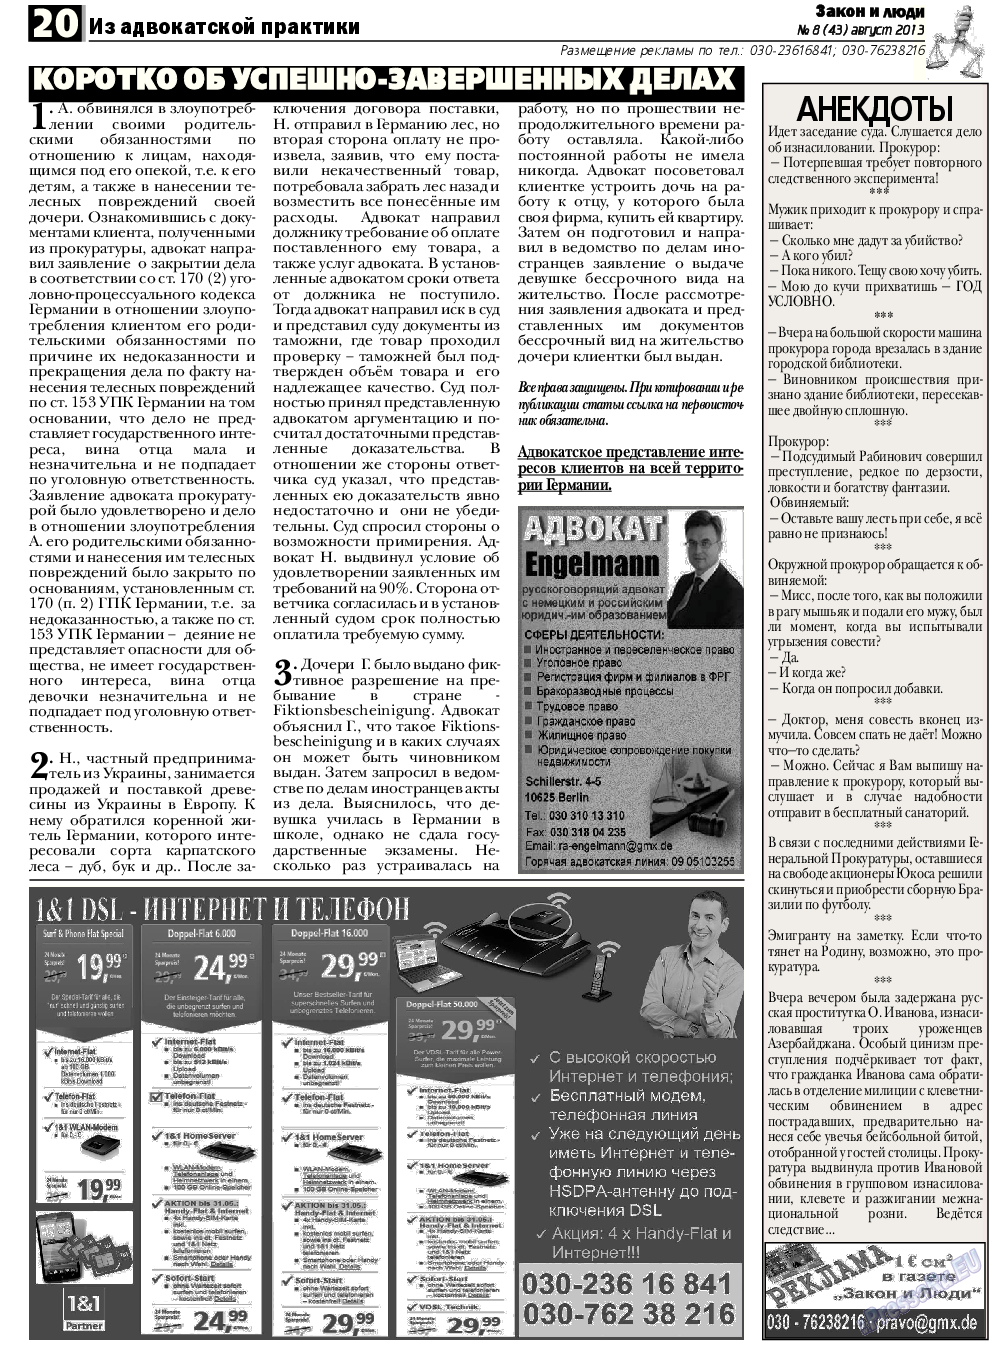 Закон и люди, газета. 2013 №8 стр.20